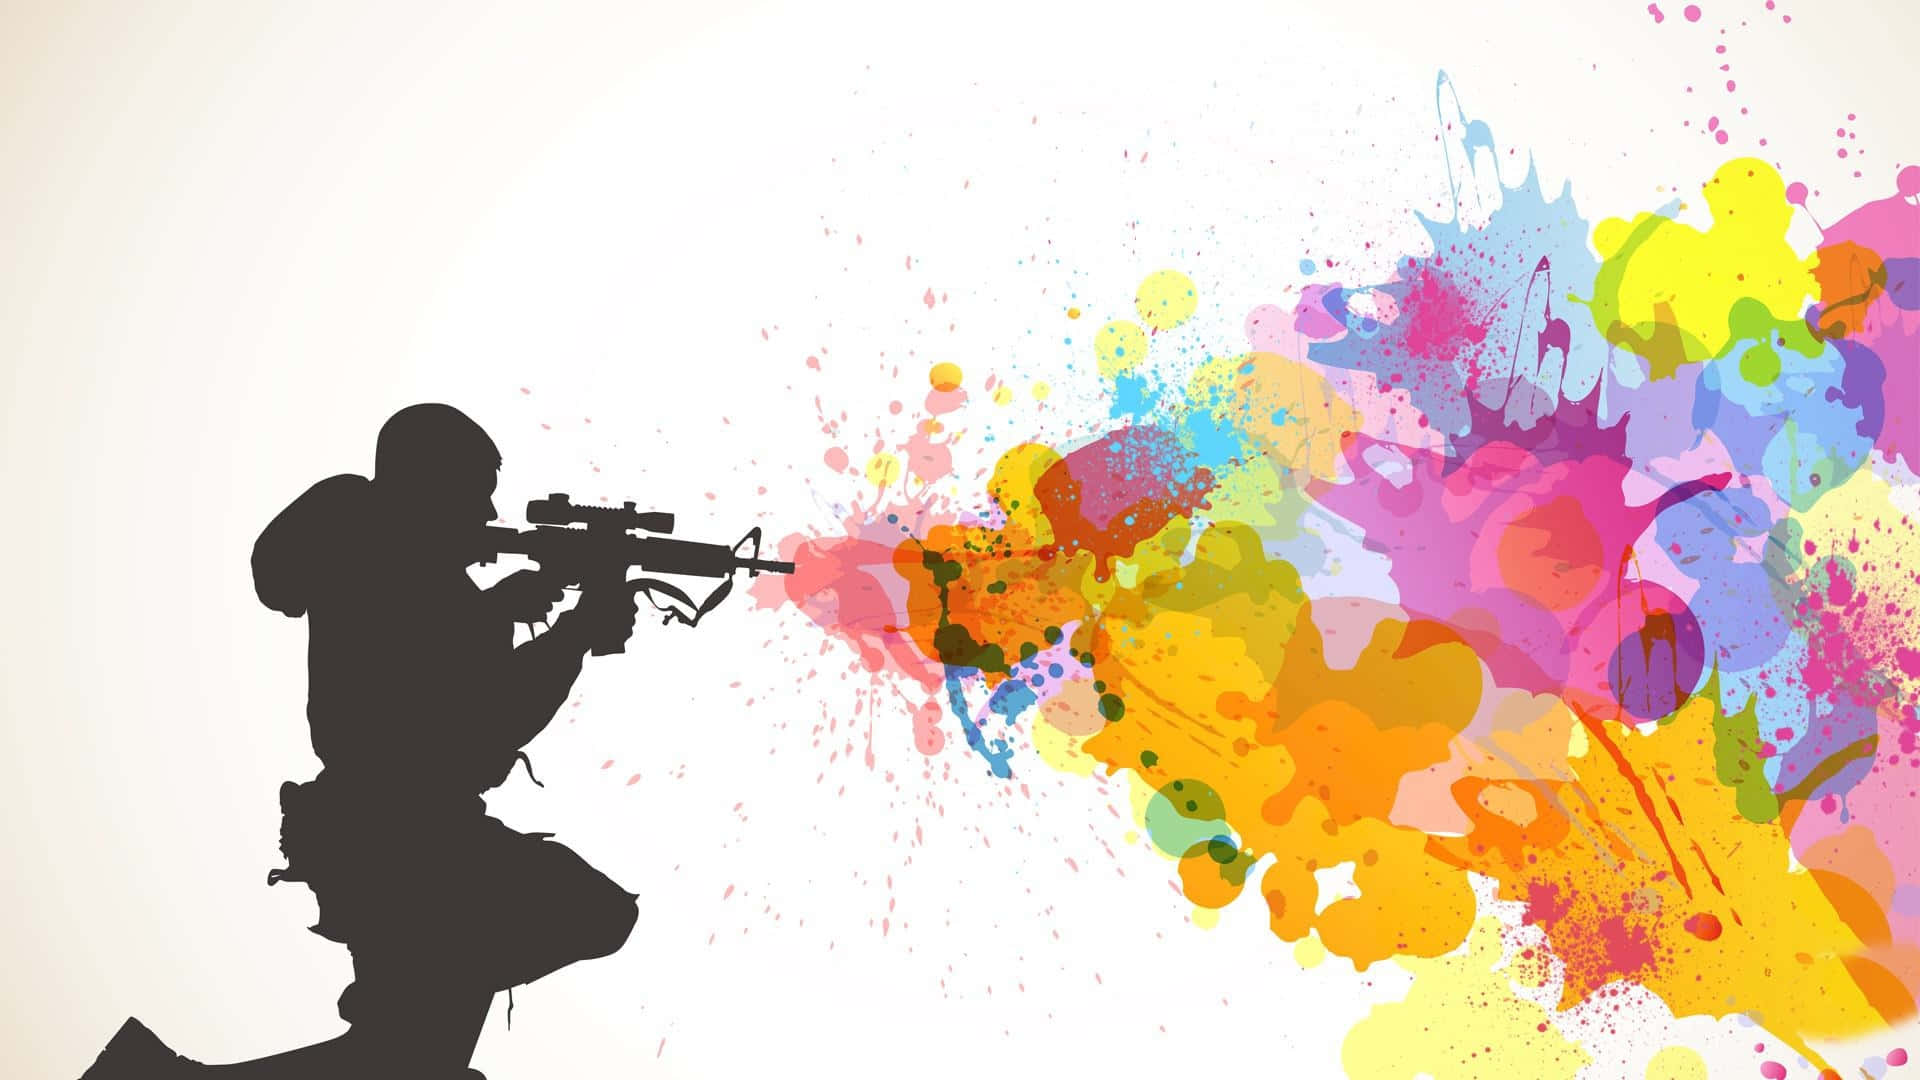 Unasilueta De Un Hombre Disparando Un Arma Con Pintura De Colores.